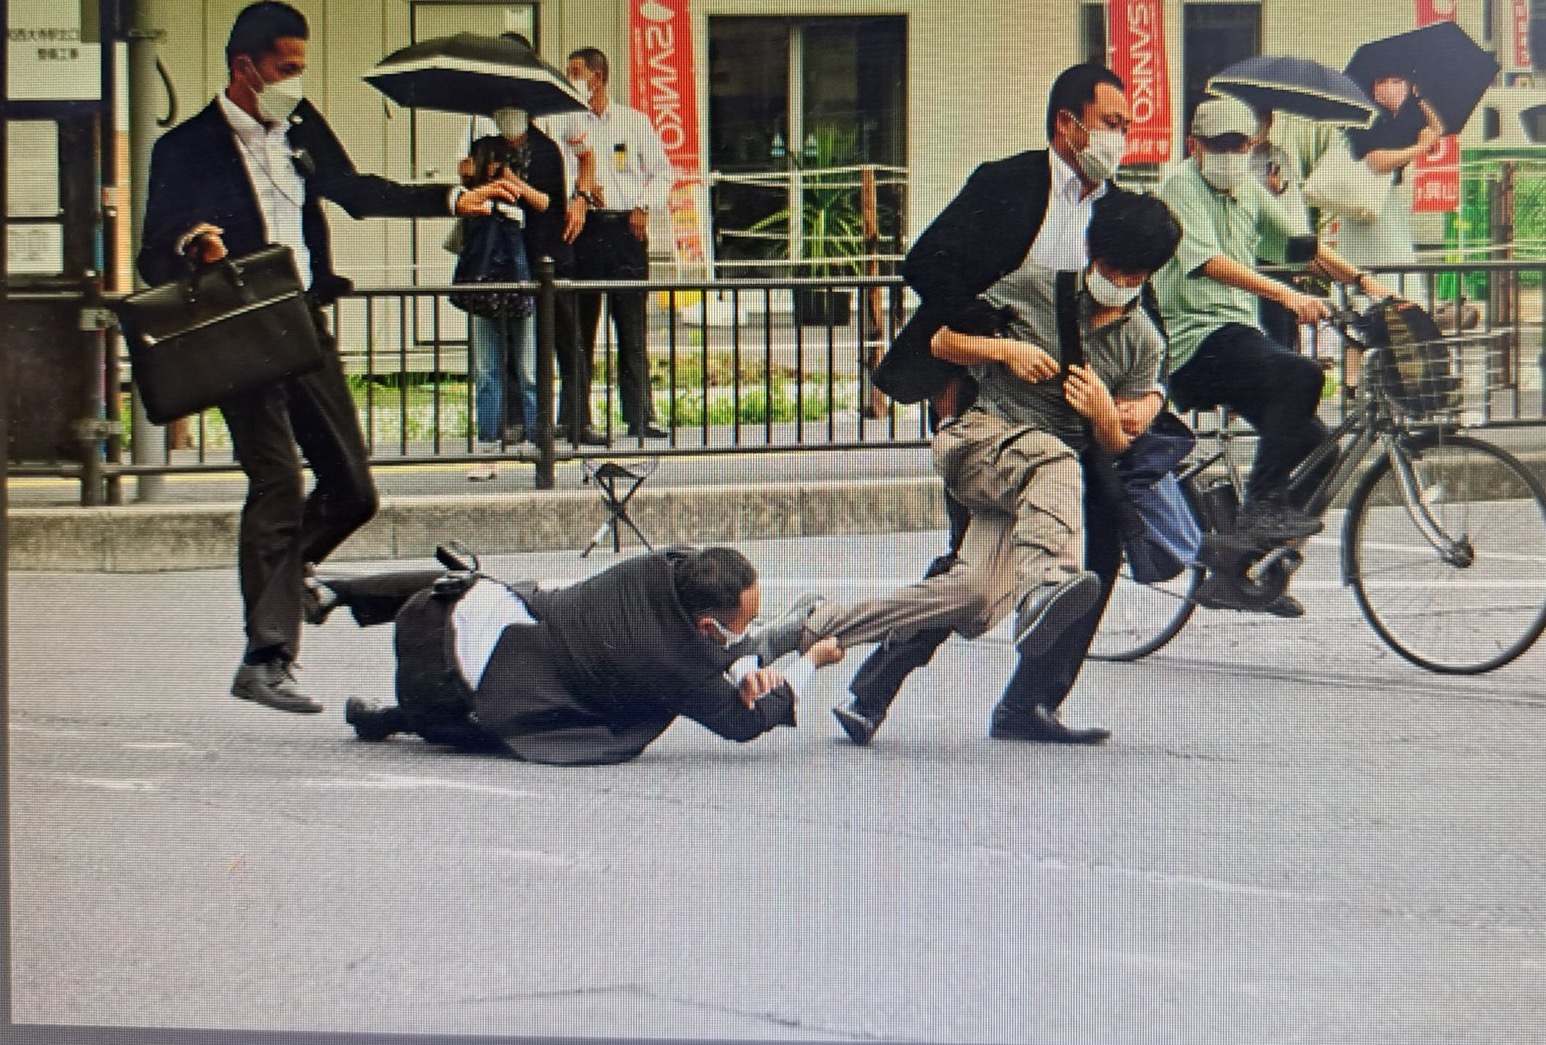 아베 총격 사건 범인이 체포되는 사진